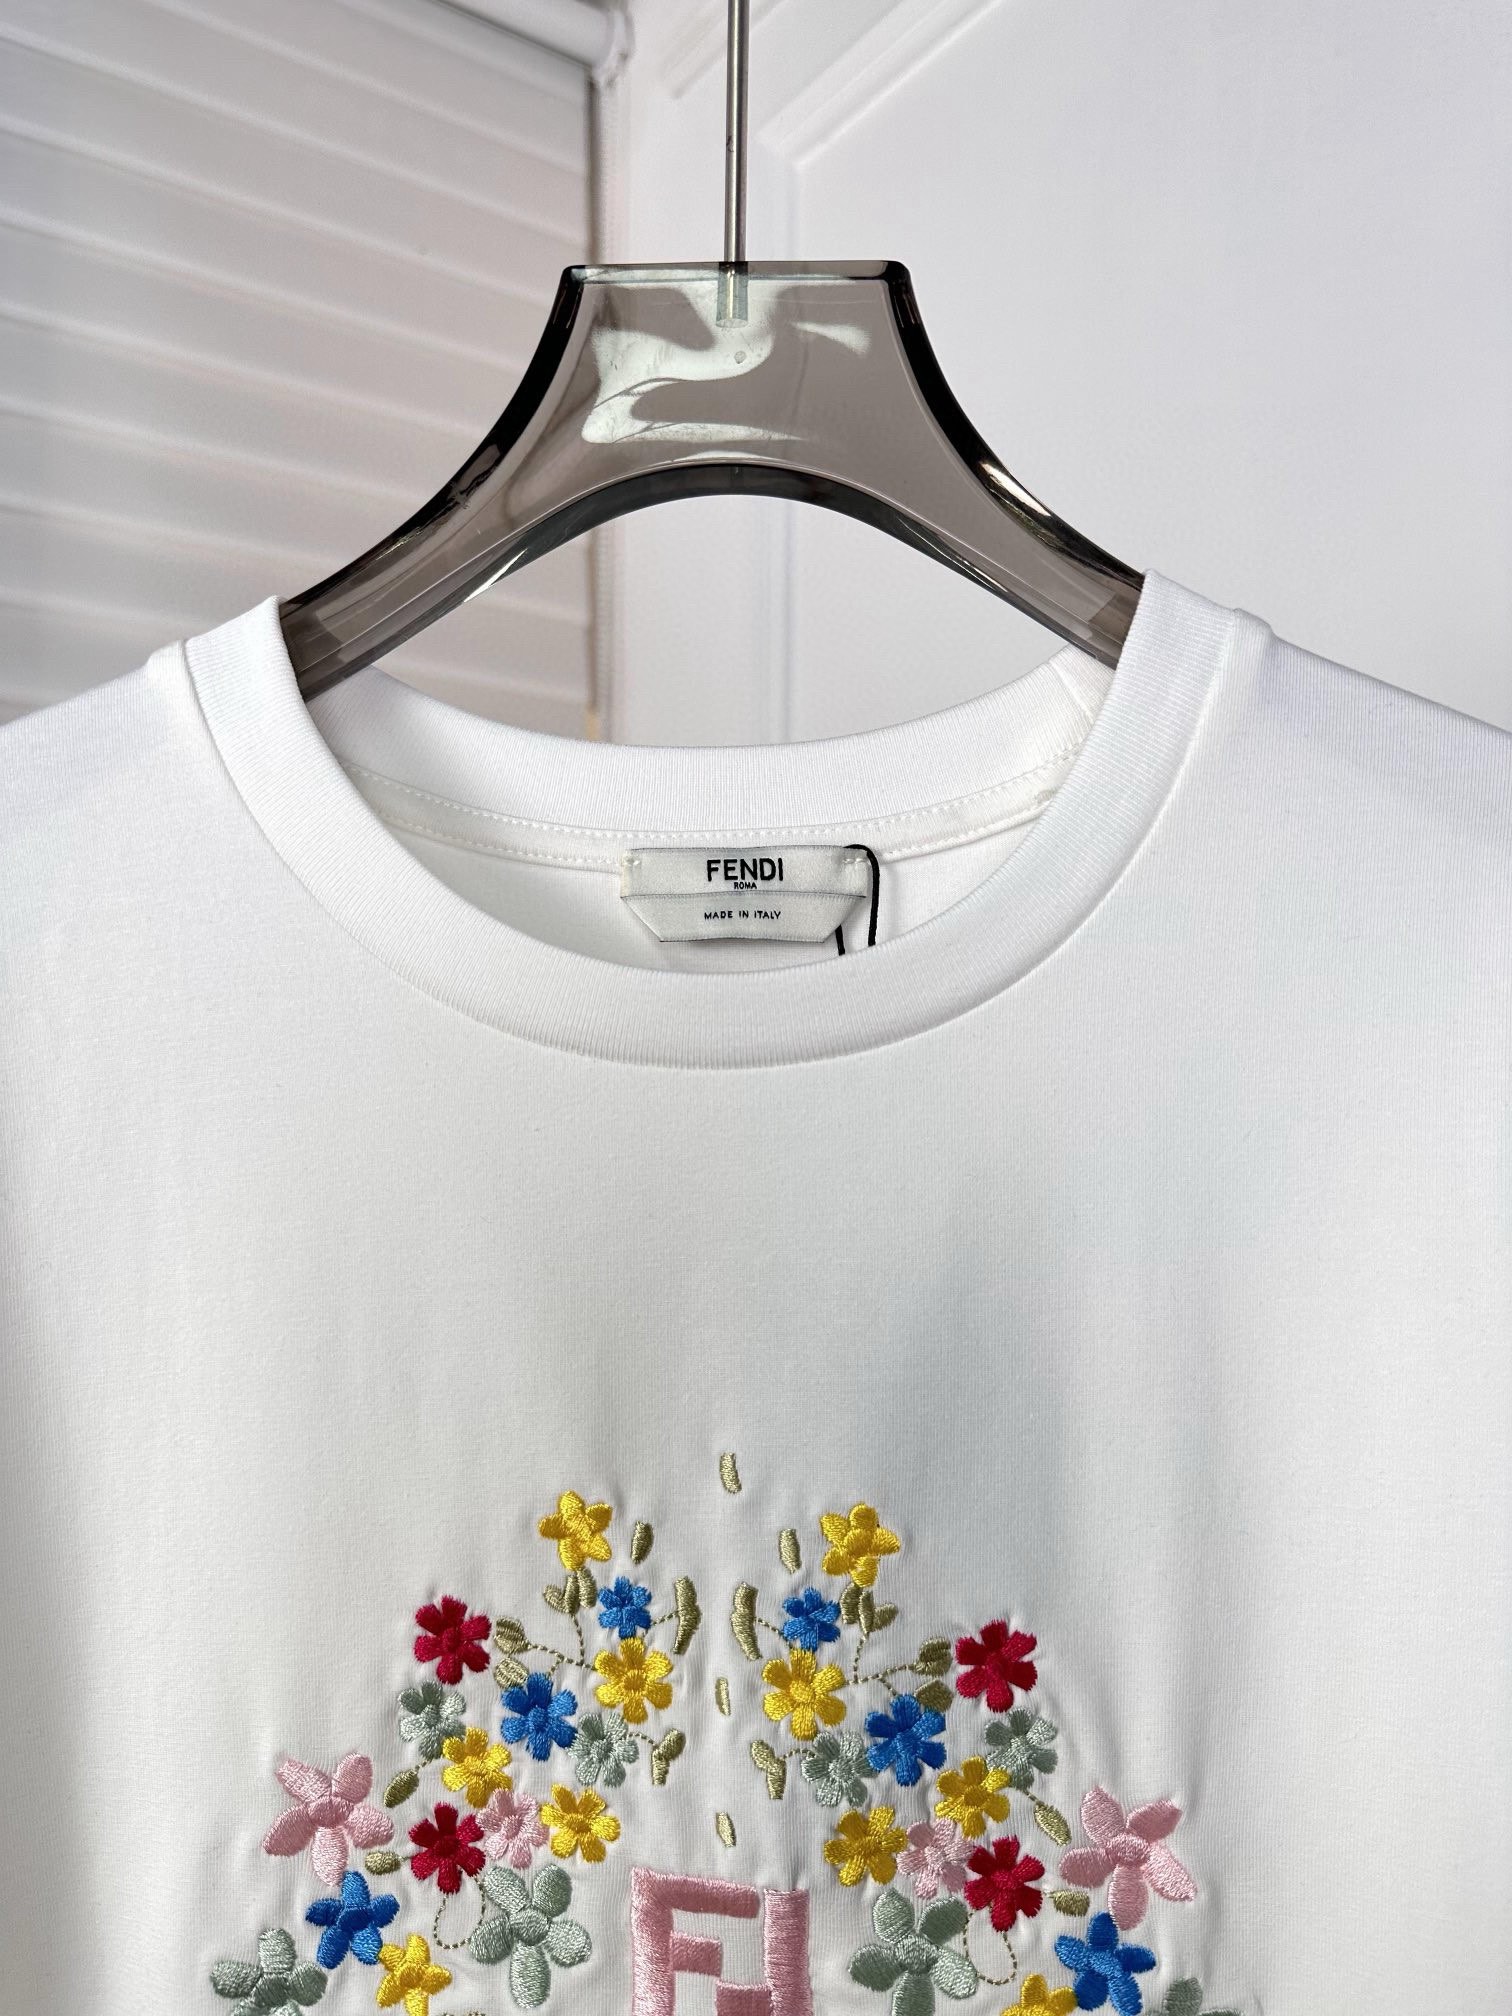 ss新品绣花T恤标准版型圆领短袖T恤采用棉质平纹布材质制作胸前饰有彩色花卉图案和品牌标识刺绣罗纹领口和下